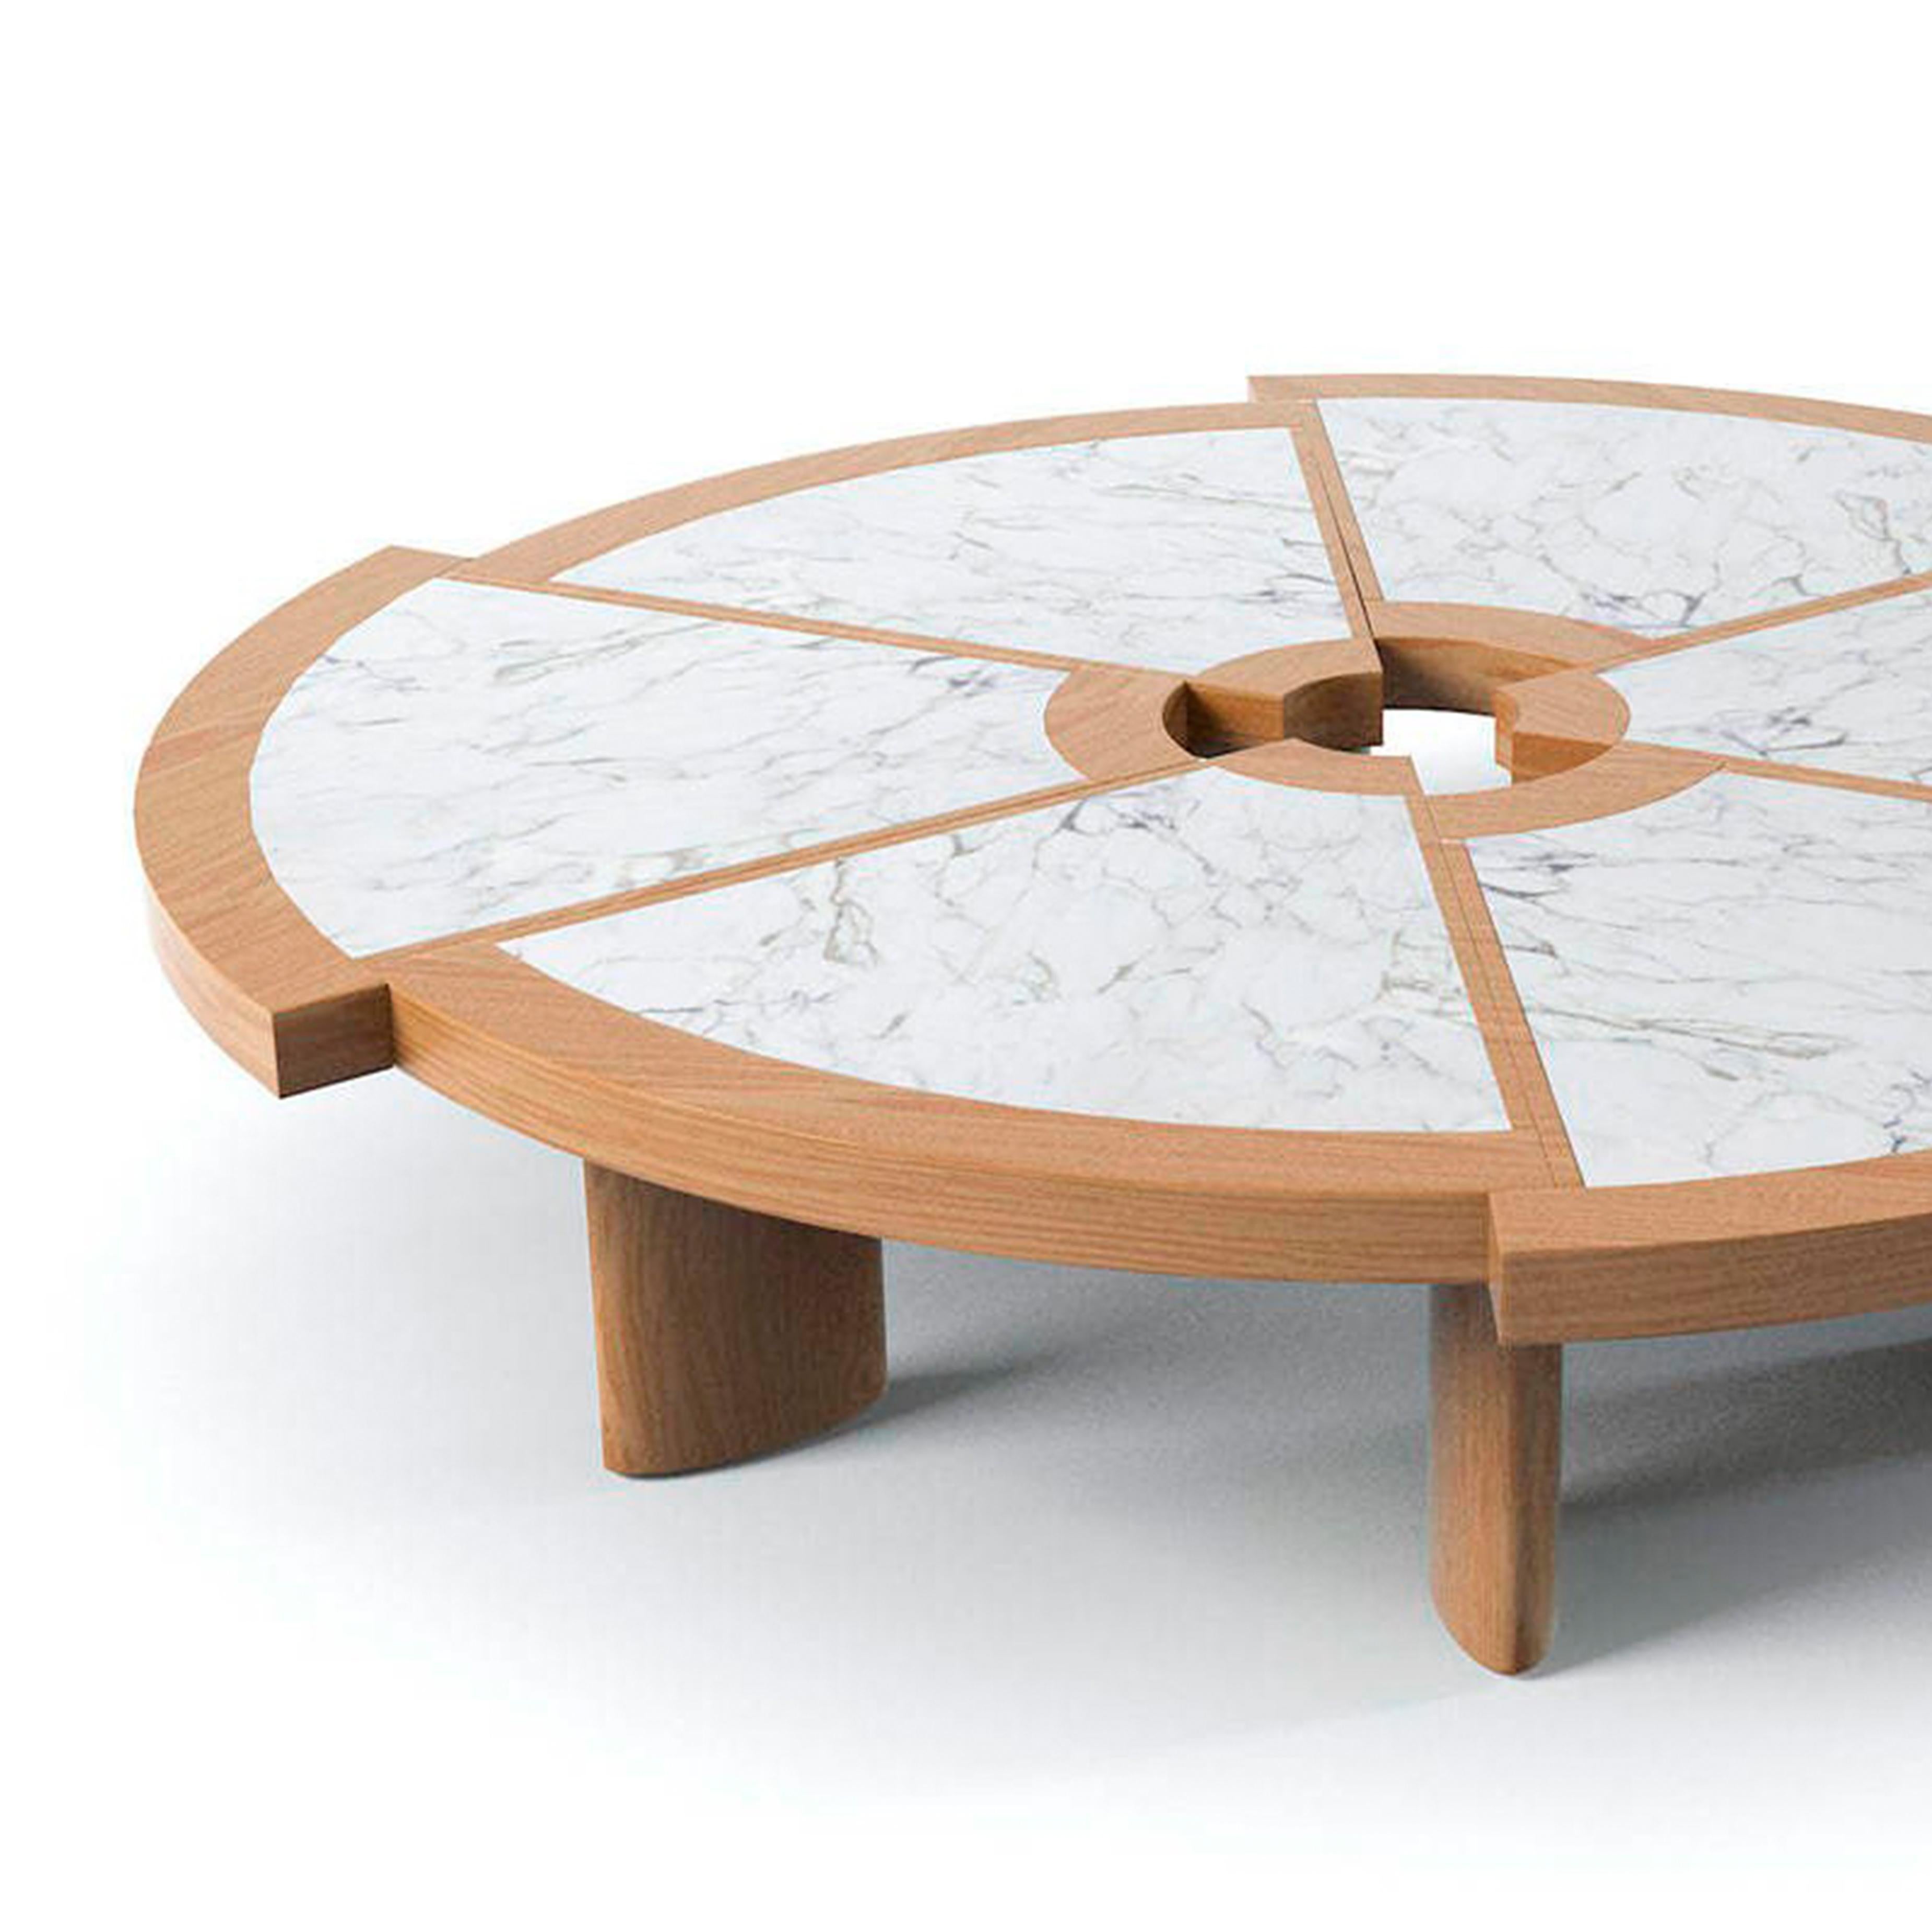 Tisch, entworfen von Charlotte Perriand im Jahr 1937. Neu aufgelegt im Jahr 2020.
Hergestellt von Cassina in Italien.

Der historische Rio-Design-Tisch vereint ungewöhnliche Schönheit und höchste Funktionalität in einer asymmetrischen Struktur,